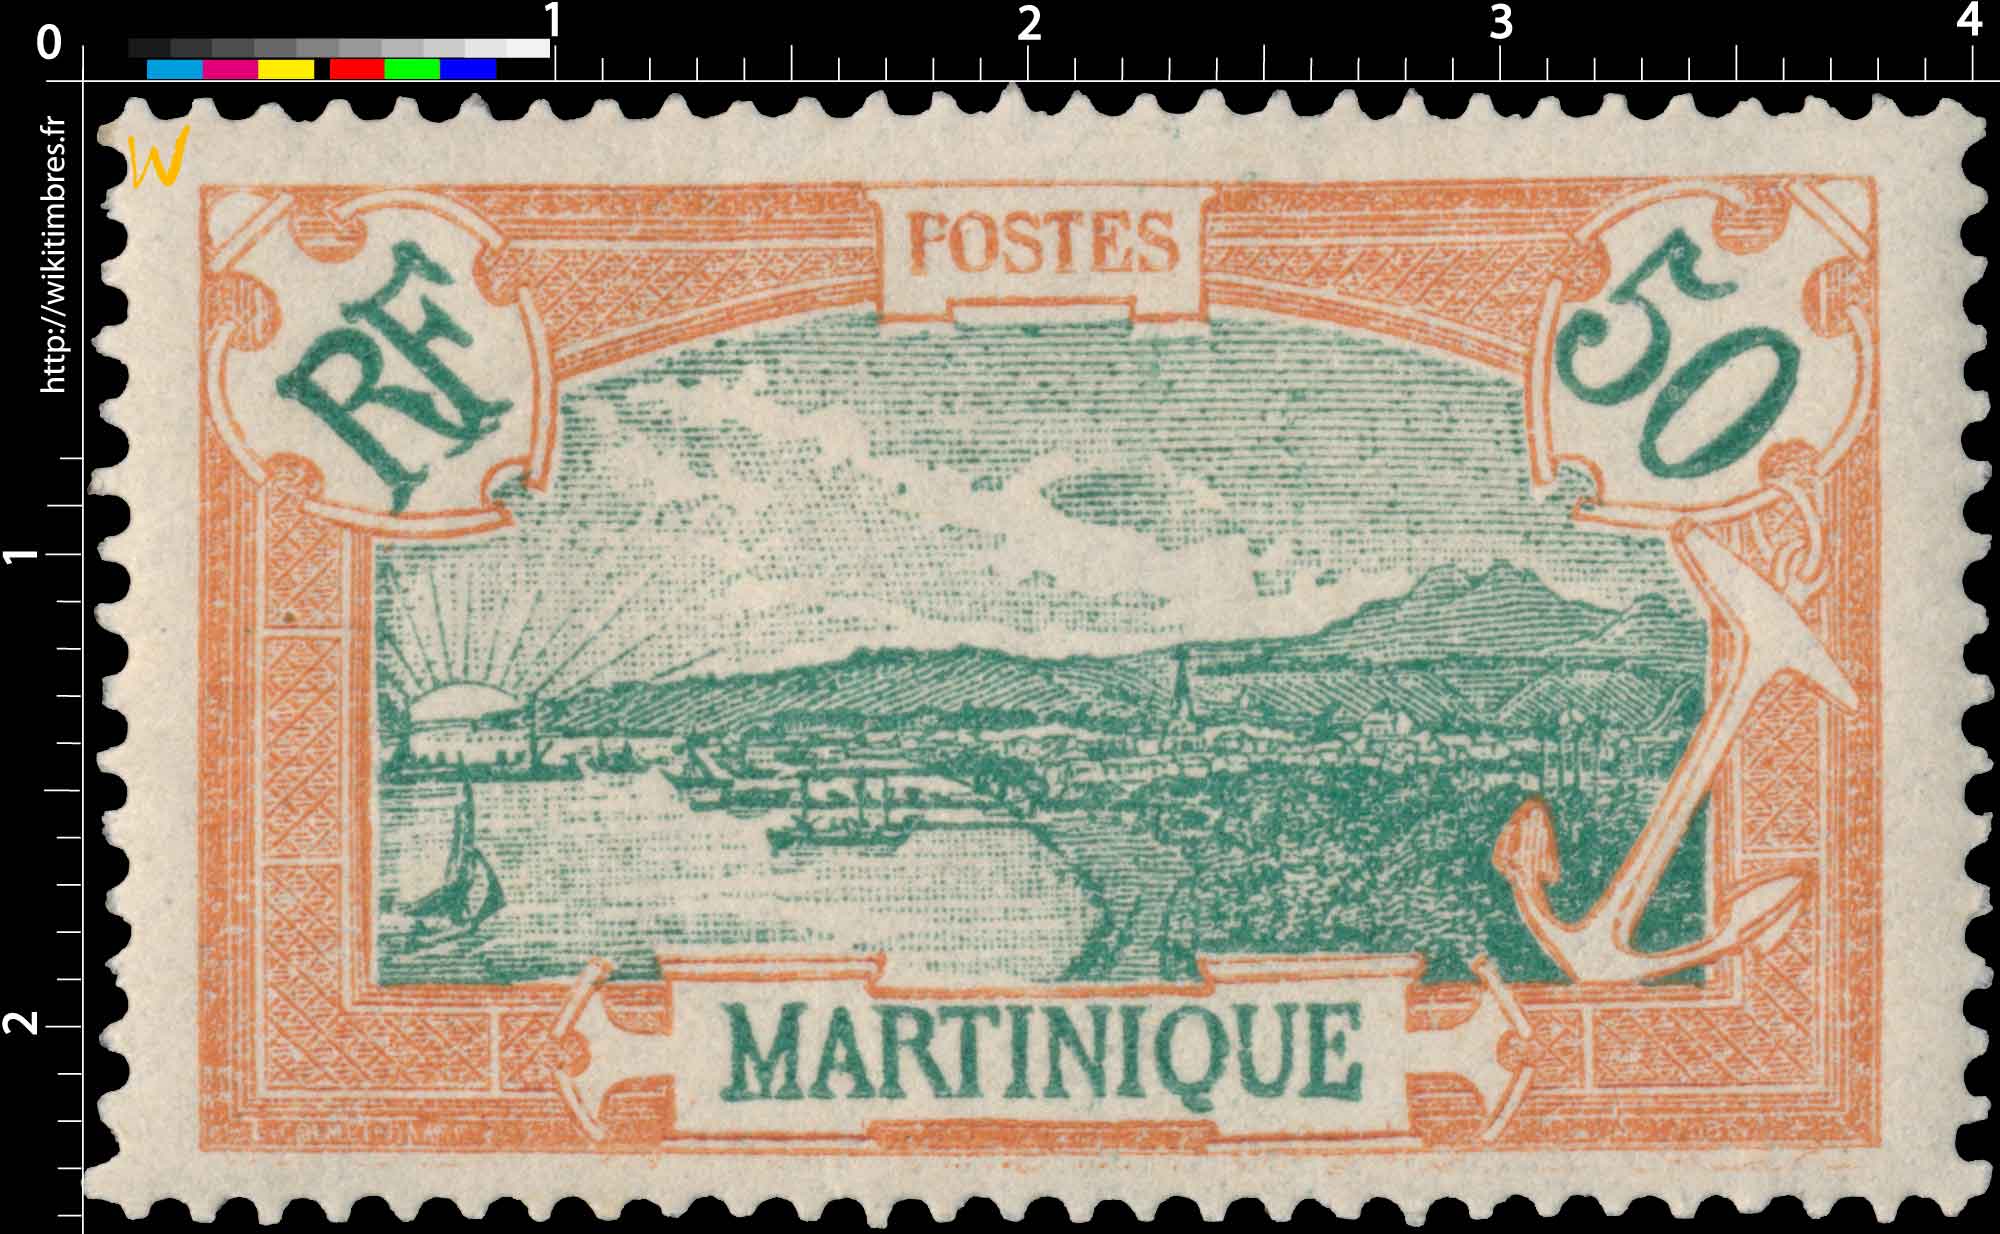 Martinique - type Fort-de-France